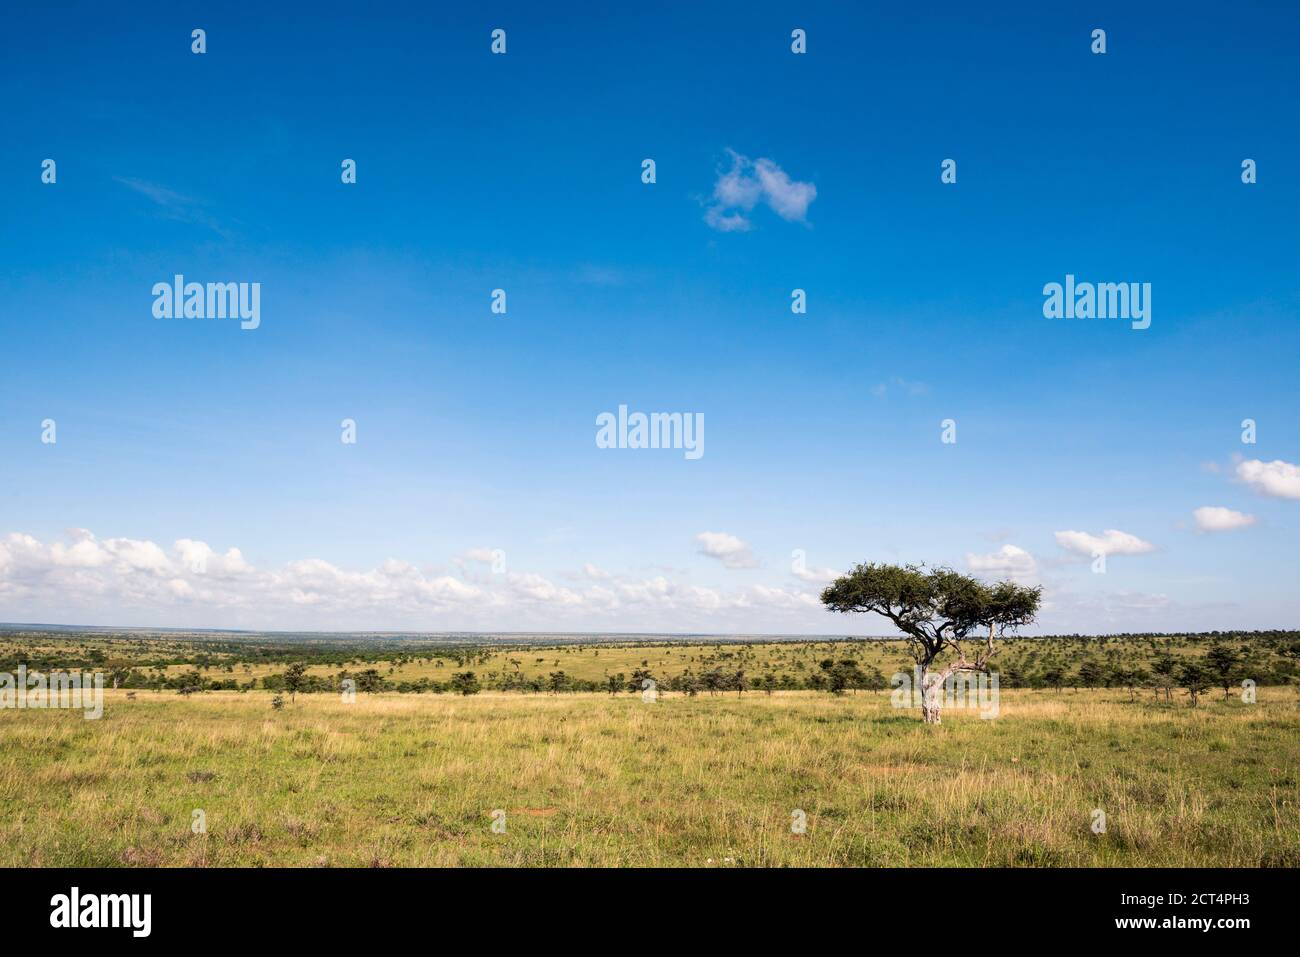 Acacia Trees at El Karama Ranch, Laikipia County, Kenya Stock Photo